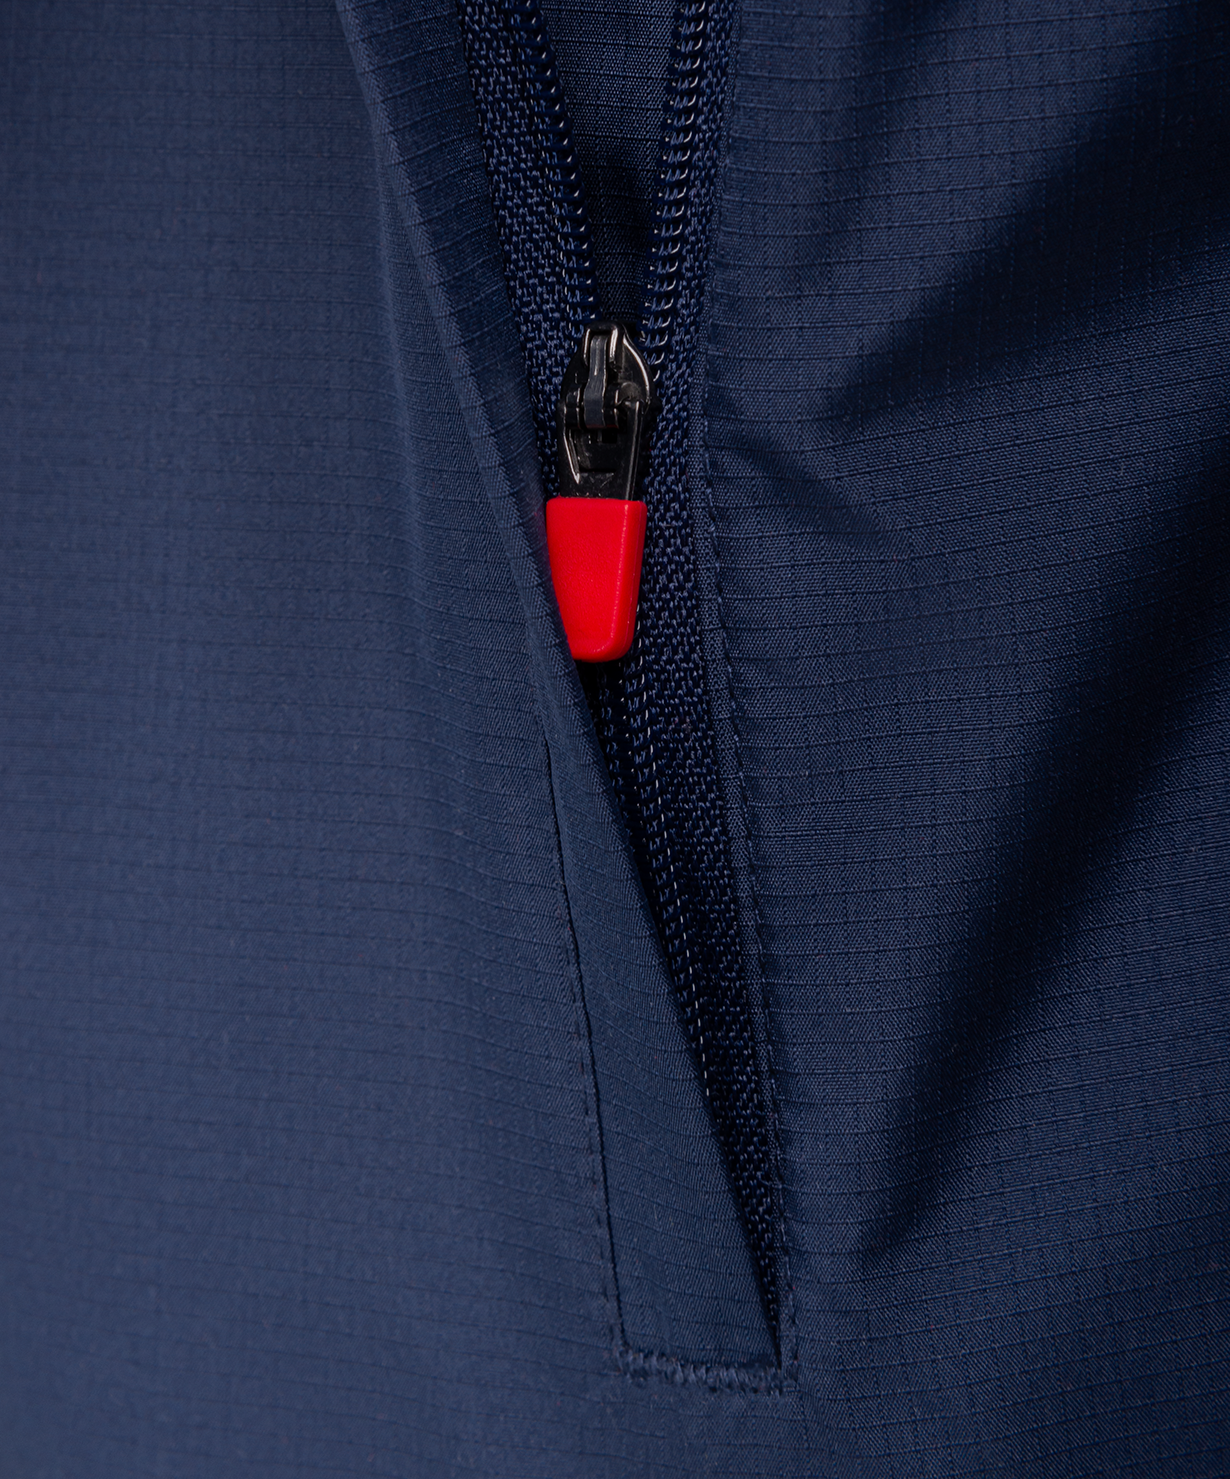 Фото Куртка ветрозащитная NATIONAL PerFormPROOF Rain Jacket, темно-синий со склада магазина СпортСЕ